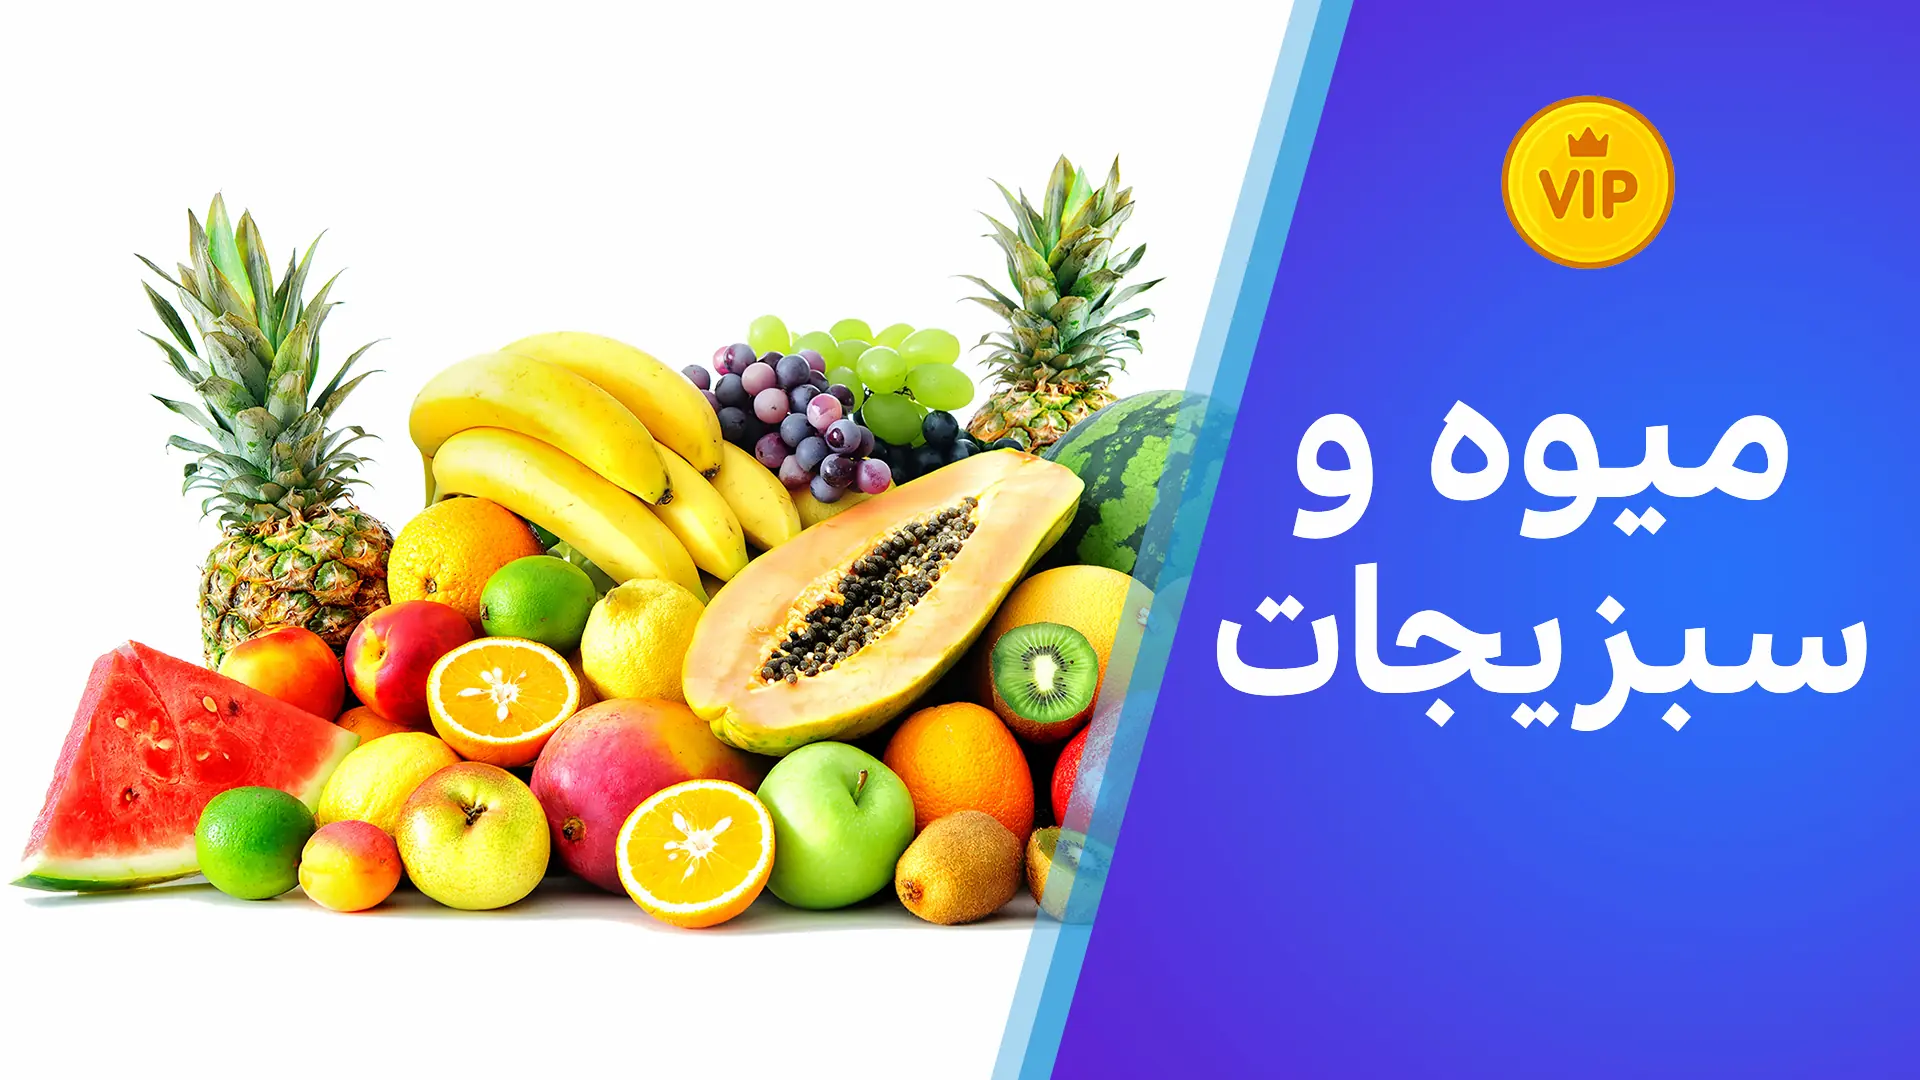 لغت/میوه و سبزیجات به لهجه شامی